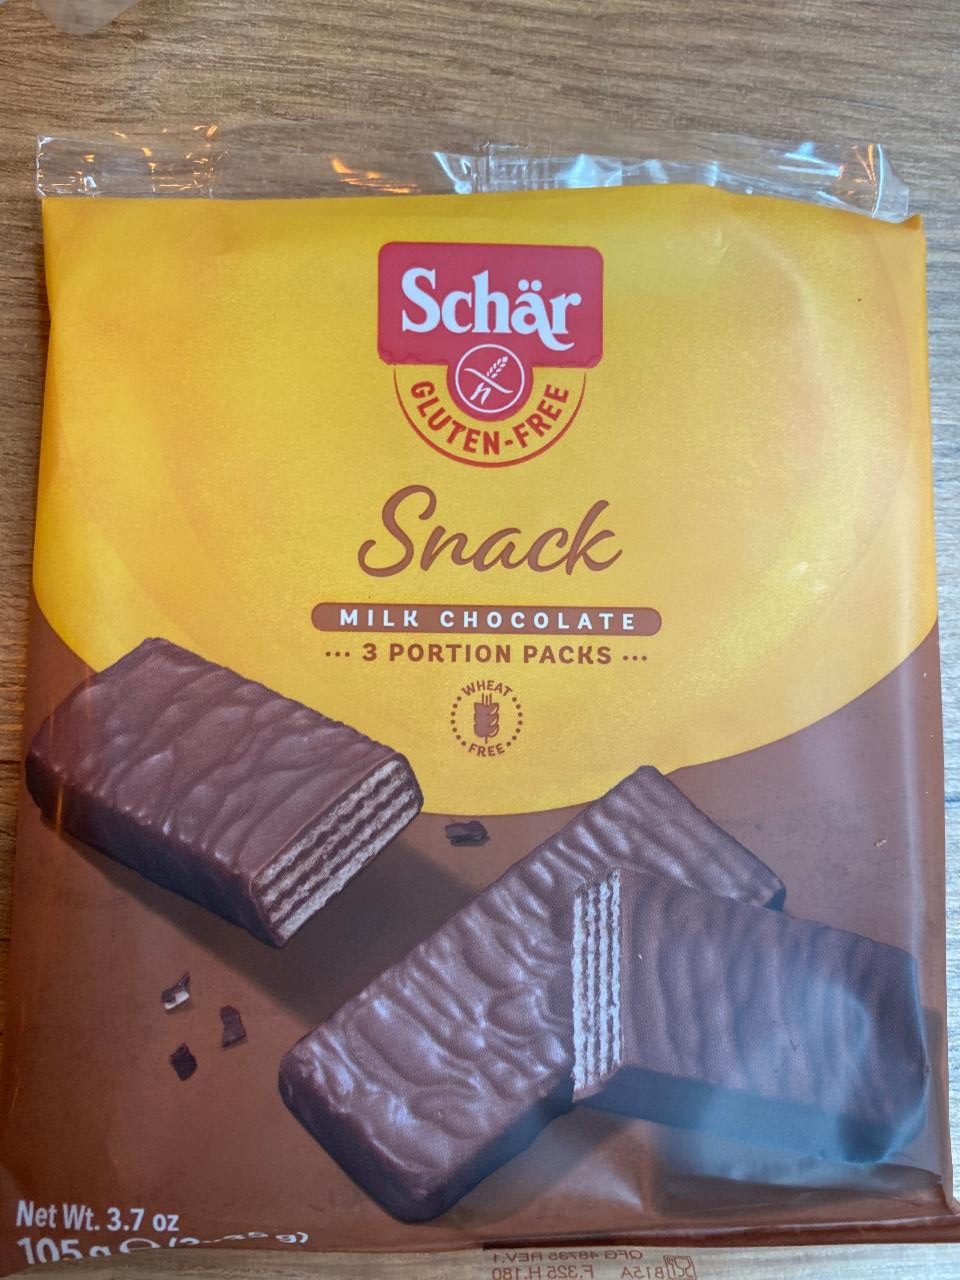 Fotografie - Snack Milk Chocolate Gluten Free Schär